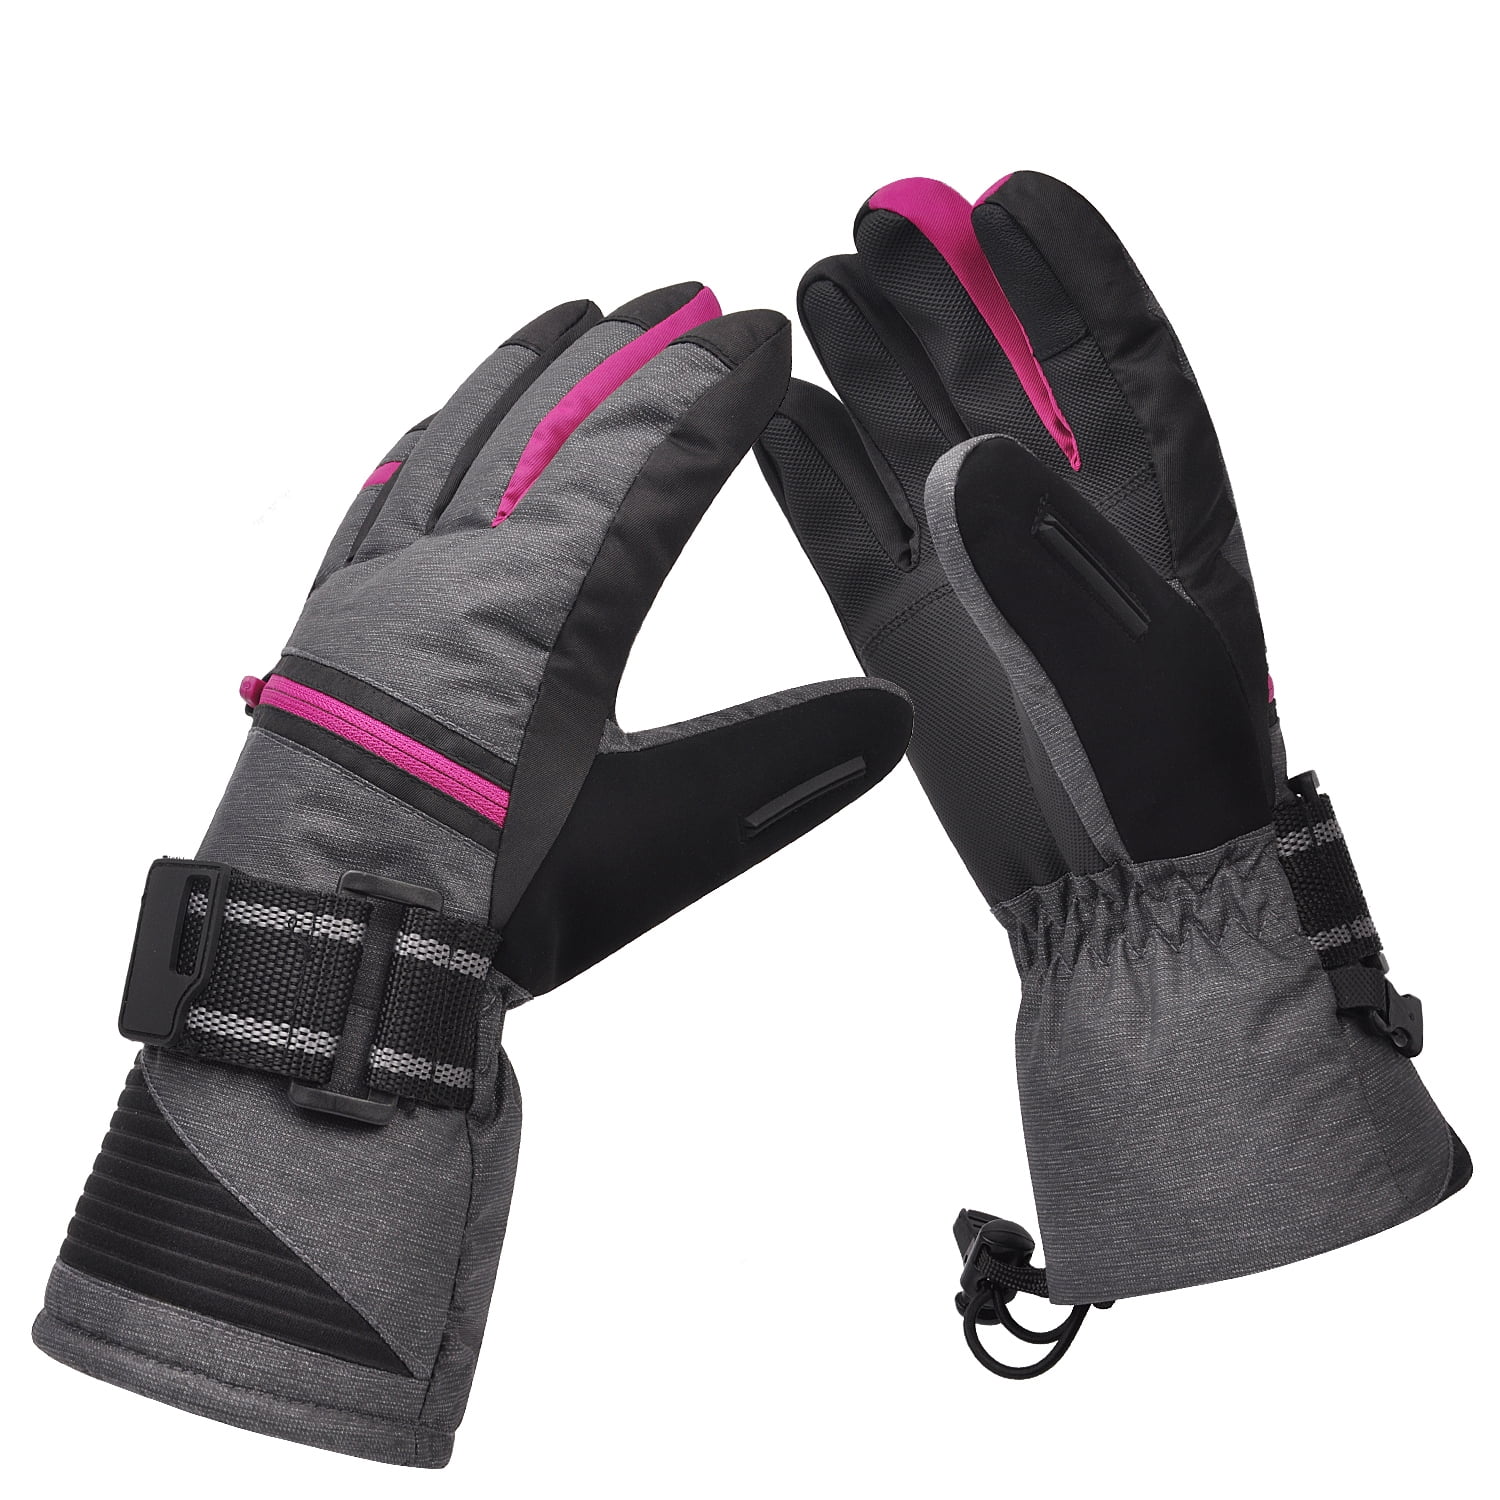 318C M Ski Gloves Motorcycle Mobile Phone Winter Warm Gloves Waterproof 